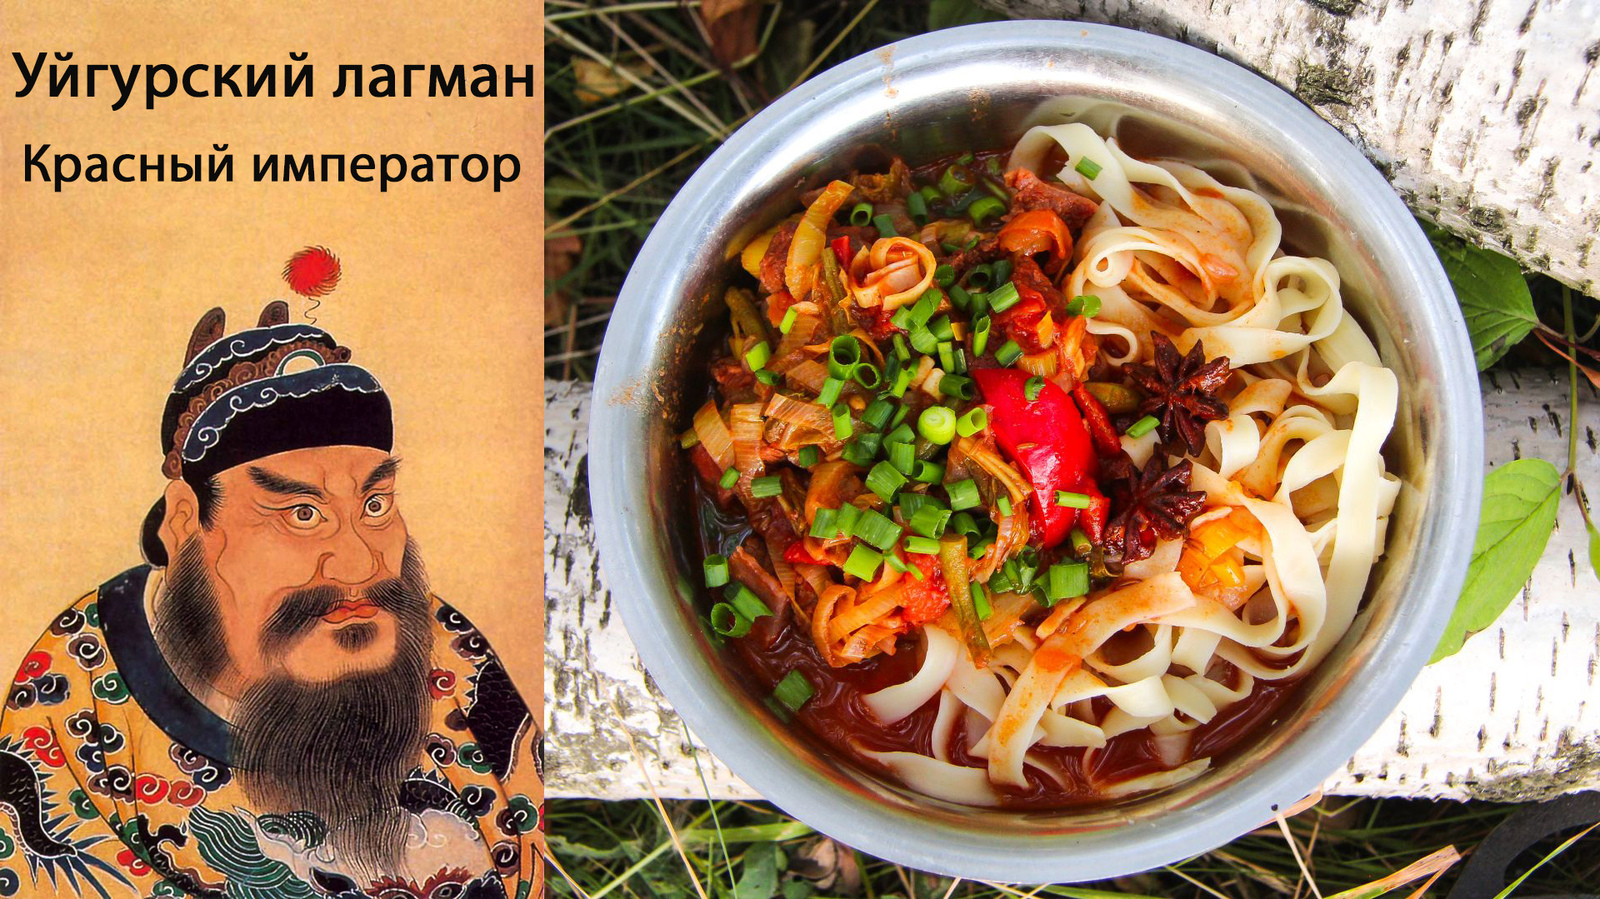 Лагман по-уйгурски, пошаговый рецепт на ккал, фото, ингредиенты - Лана